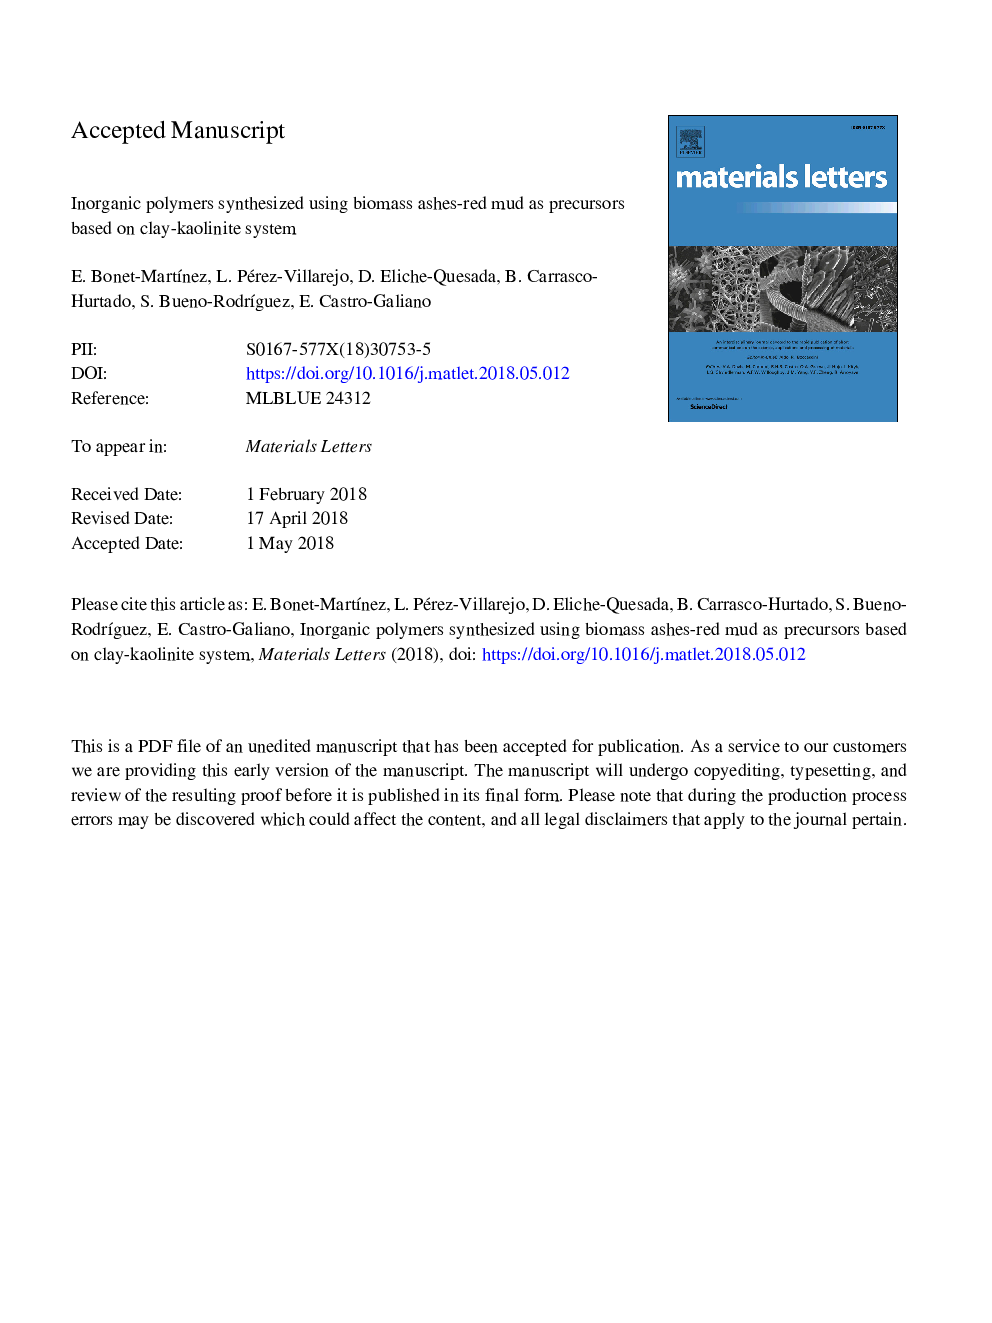 پلیمرهای معدنی سنتز شده با استفاده از خاکستر خاکستری زیست توده به عنوان پیش سازهای مبتنی بر سیستم رس-کائولینیت 